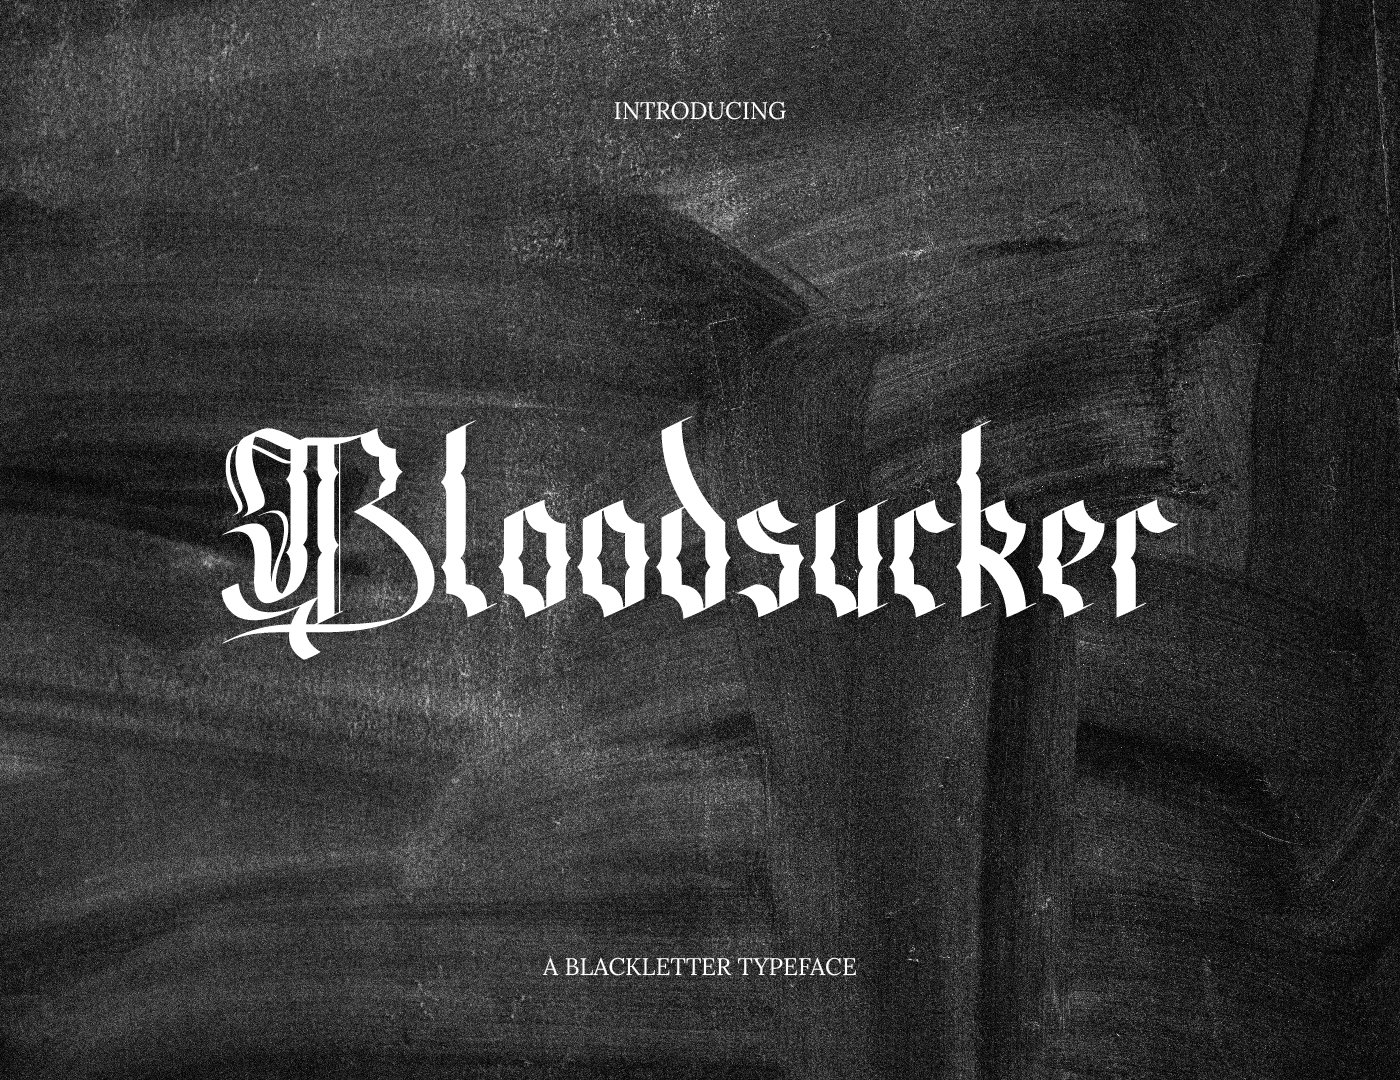 Bloodsucker Modern Blackletter cover image.